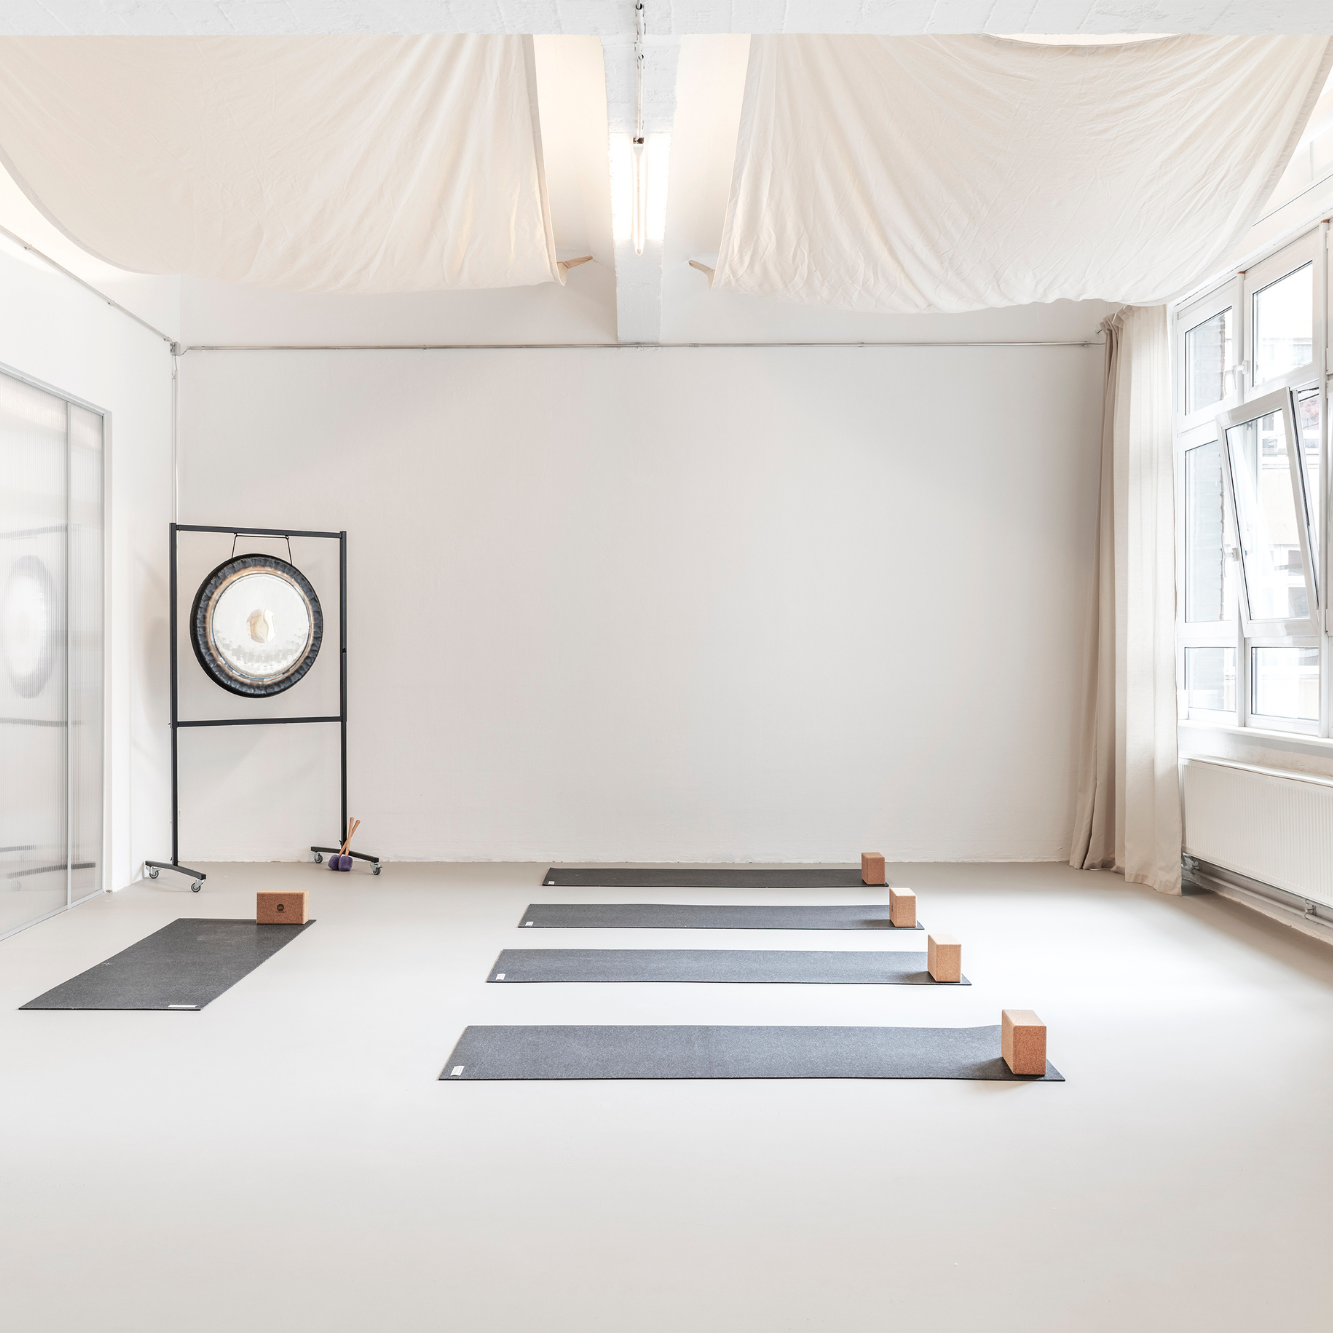 Das wunderschöne Studio in Berlin sehr clean und minimalistisch